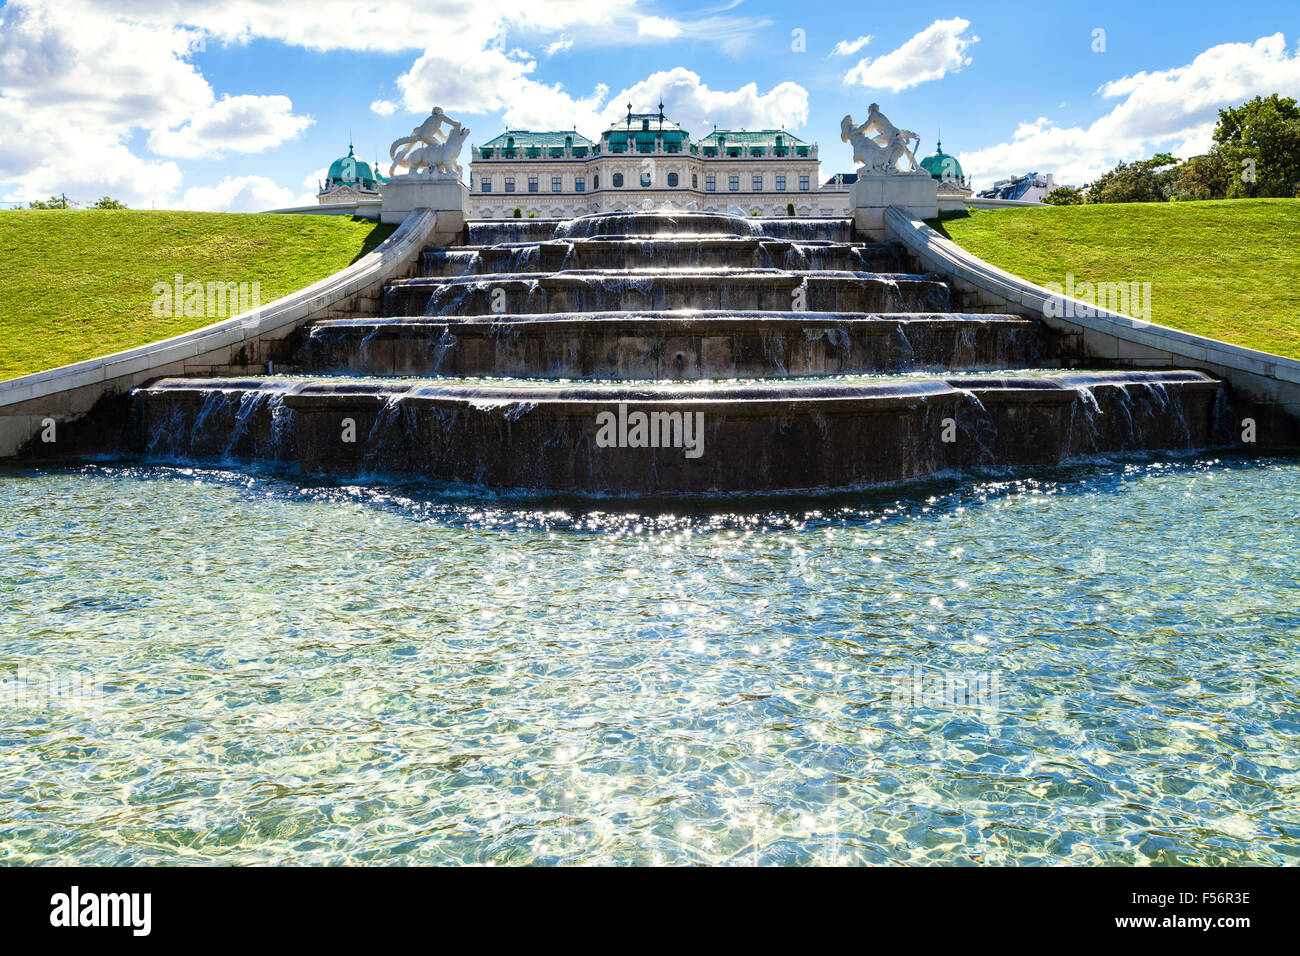 die Reise nach Wien Stadt - oberen Kaskade und Ansicht des oberen Schlosses Belvedere, Wien, Österreich Stockfoto